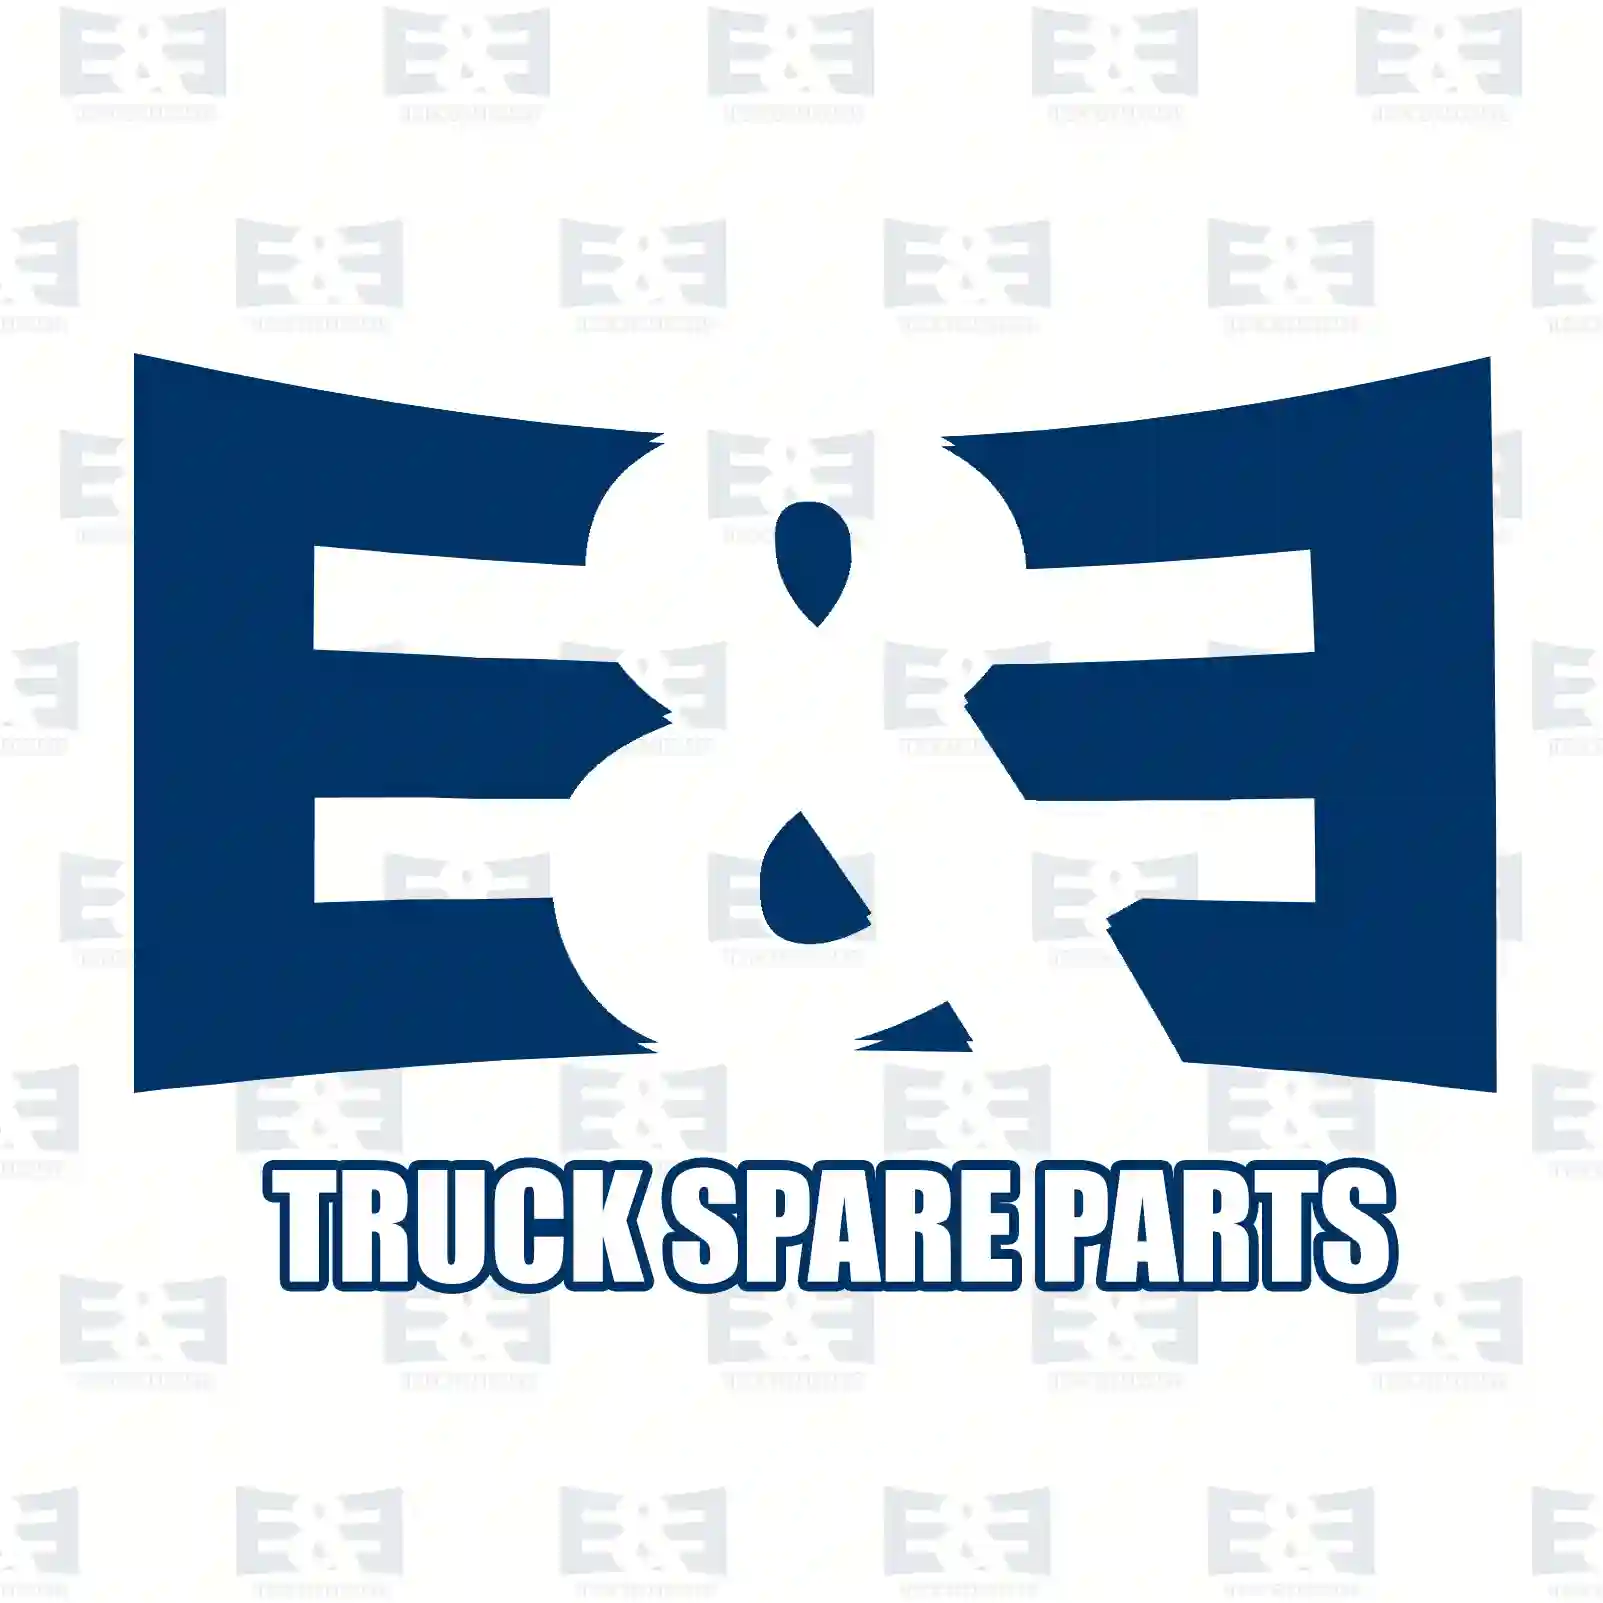 4-circuit-protection valve, 2E2294147, 5010525808, , , , , , , , , , ||  2E2294147 E&E Truck Spare Parts | Truck Spare Parts, Auotomotive Spare Parts 4-circuit-protection valve, 2E2294147, 5010525808, , , , , , , , , , ||  2E2294147 E&E Truck Spare Parts | Truck Spare Parts, Auotomotive Spare Parts